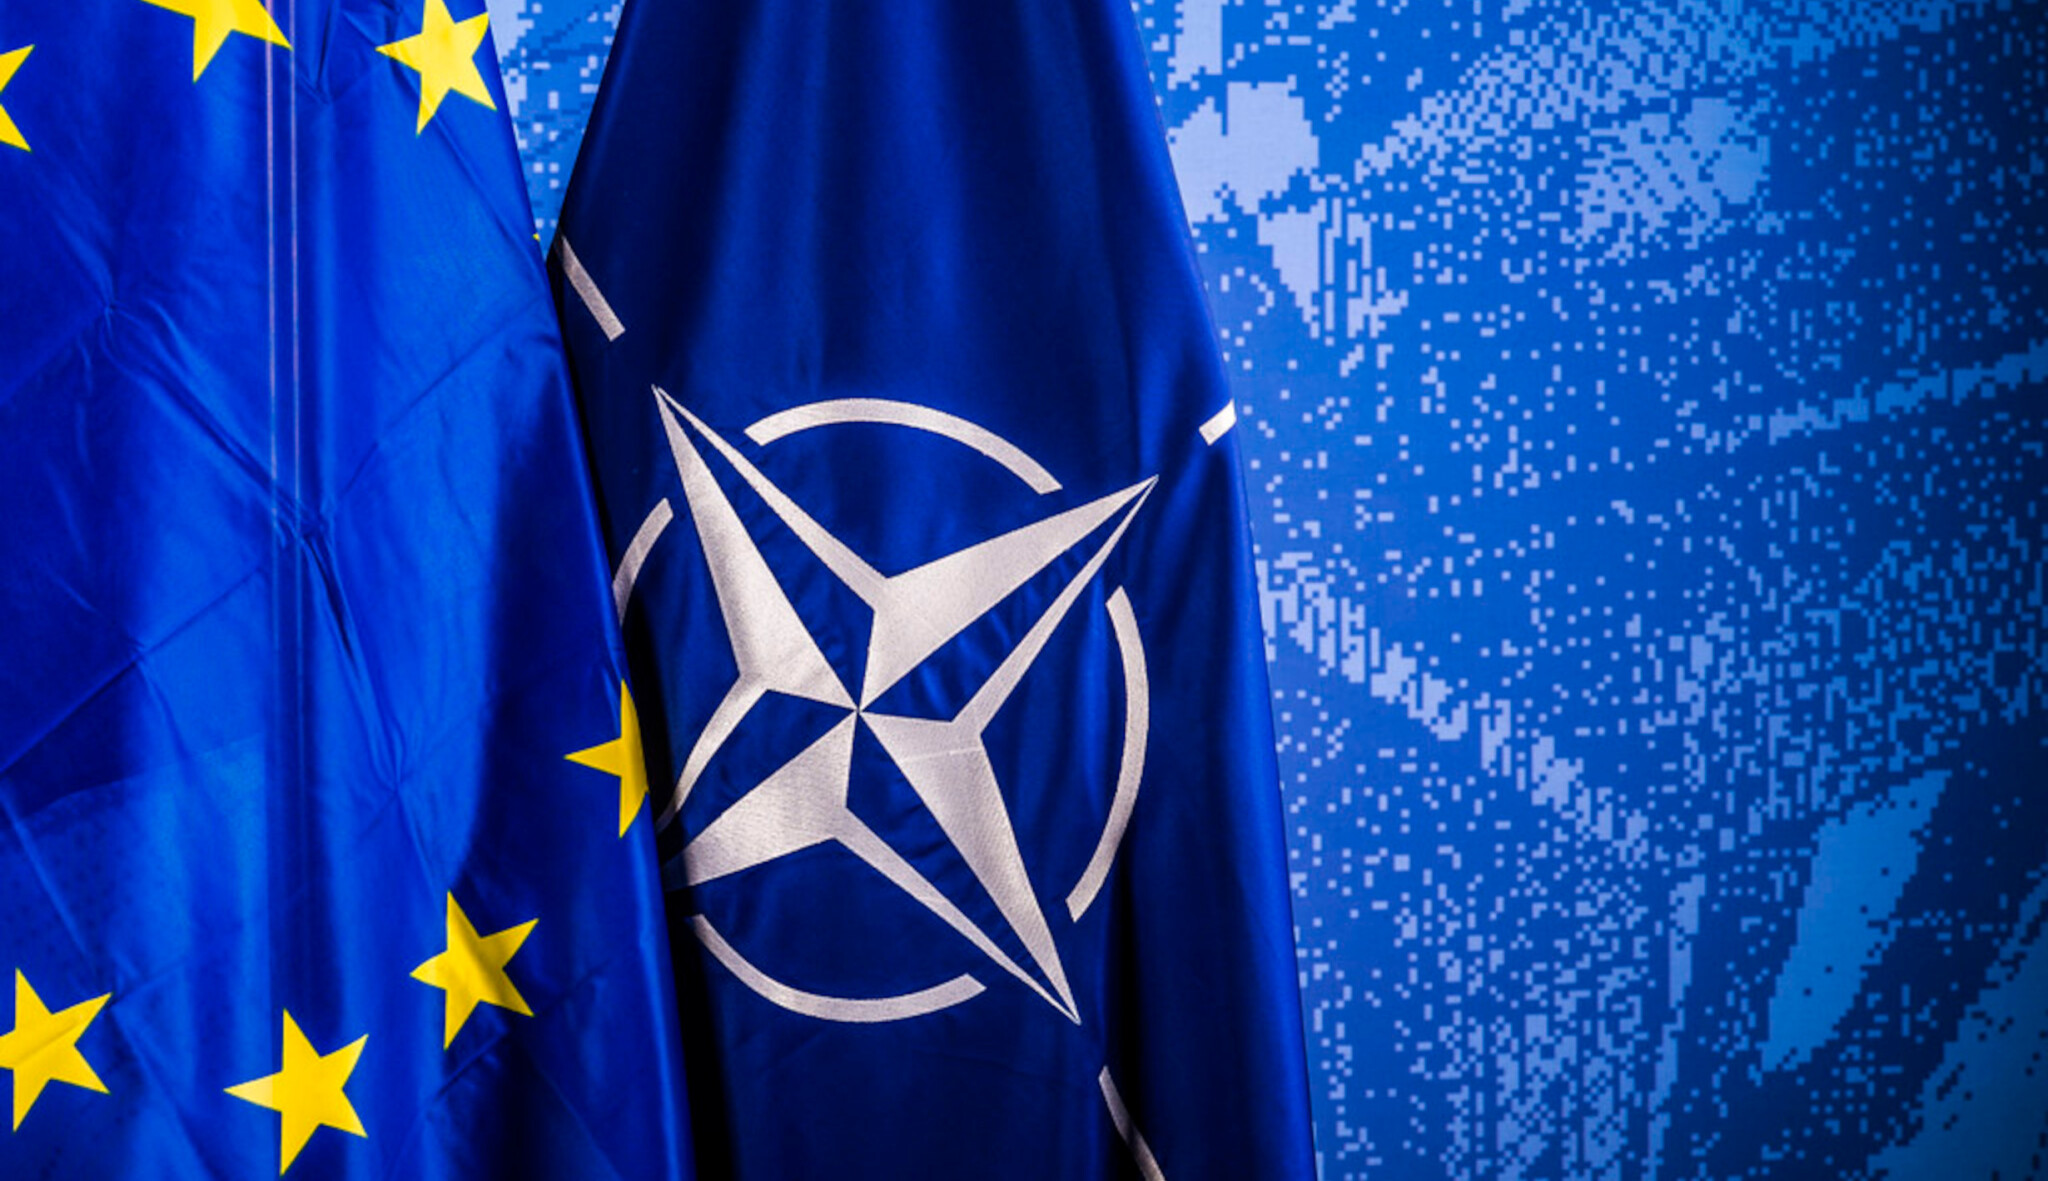 Členové NATO se dohodli na zvýšení rozpočtů na obranu. Na summitu zazněla i kritika sankcí